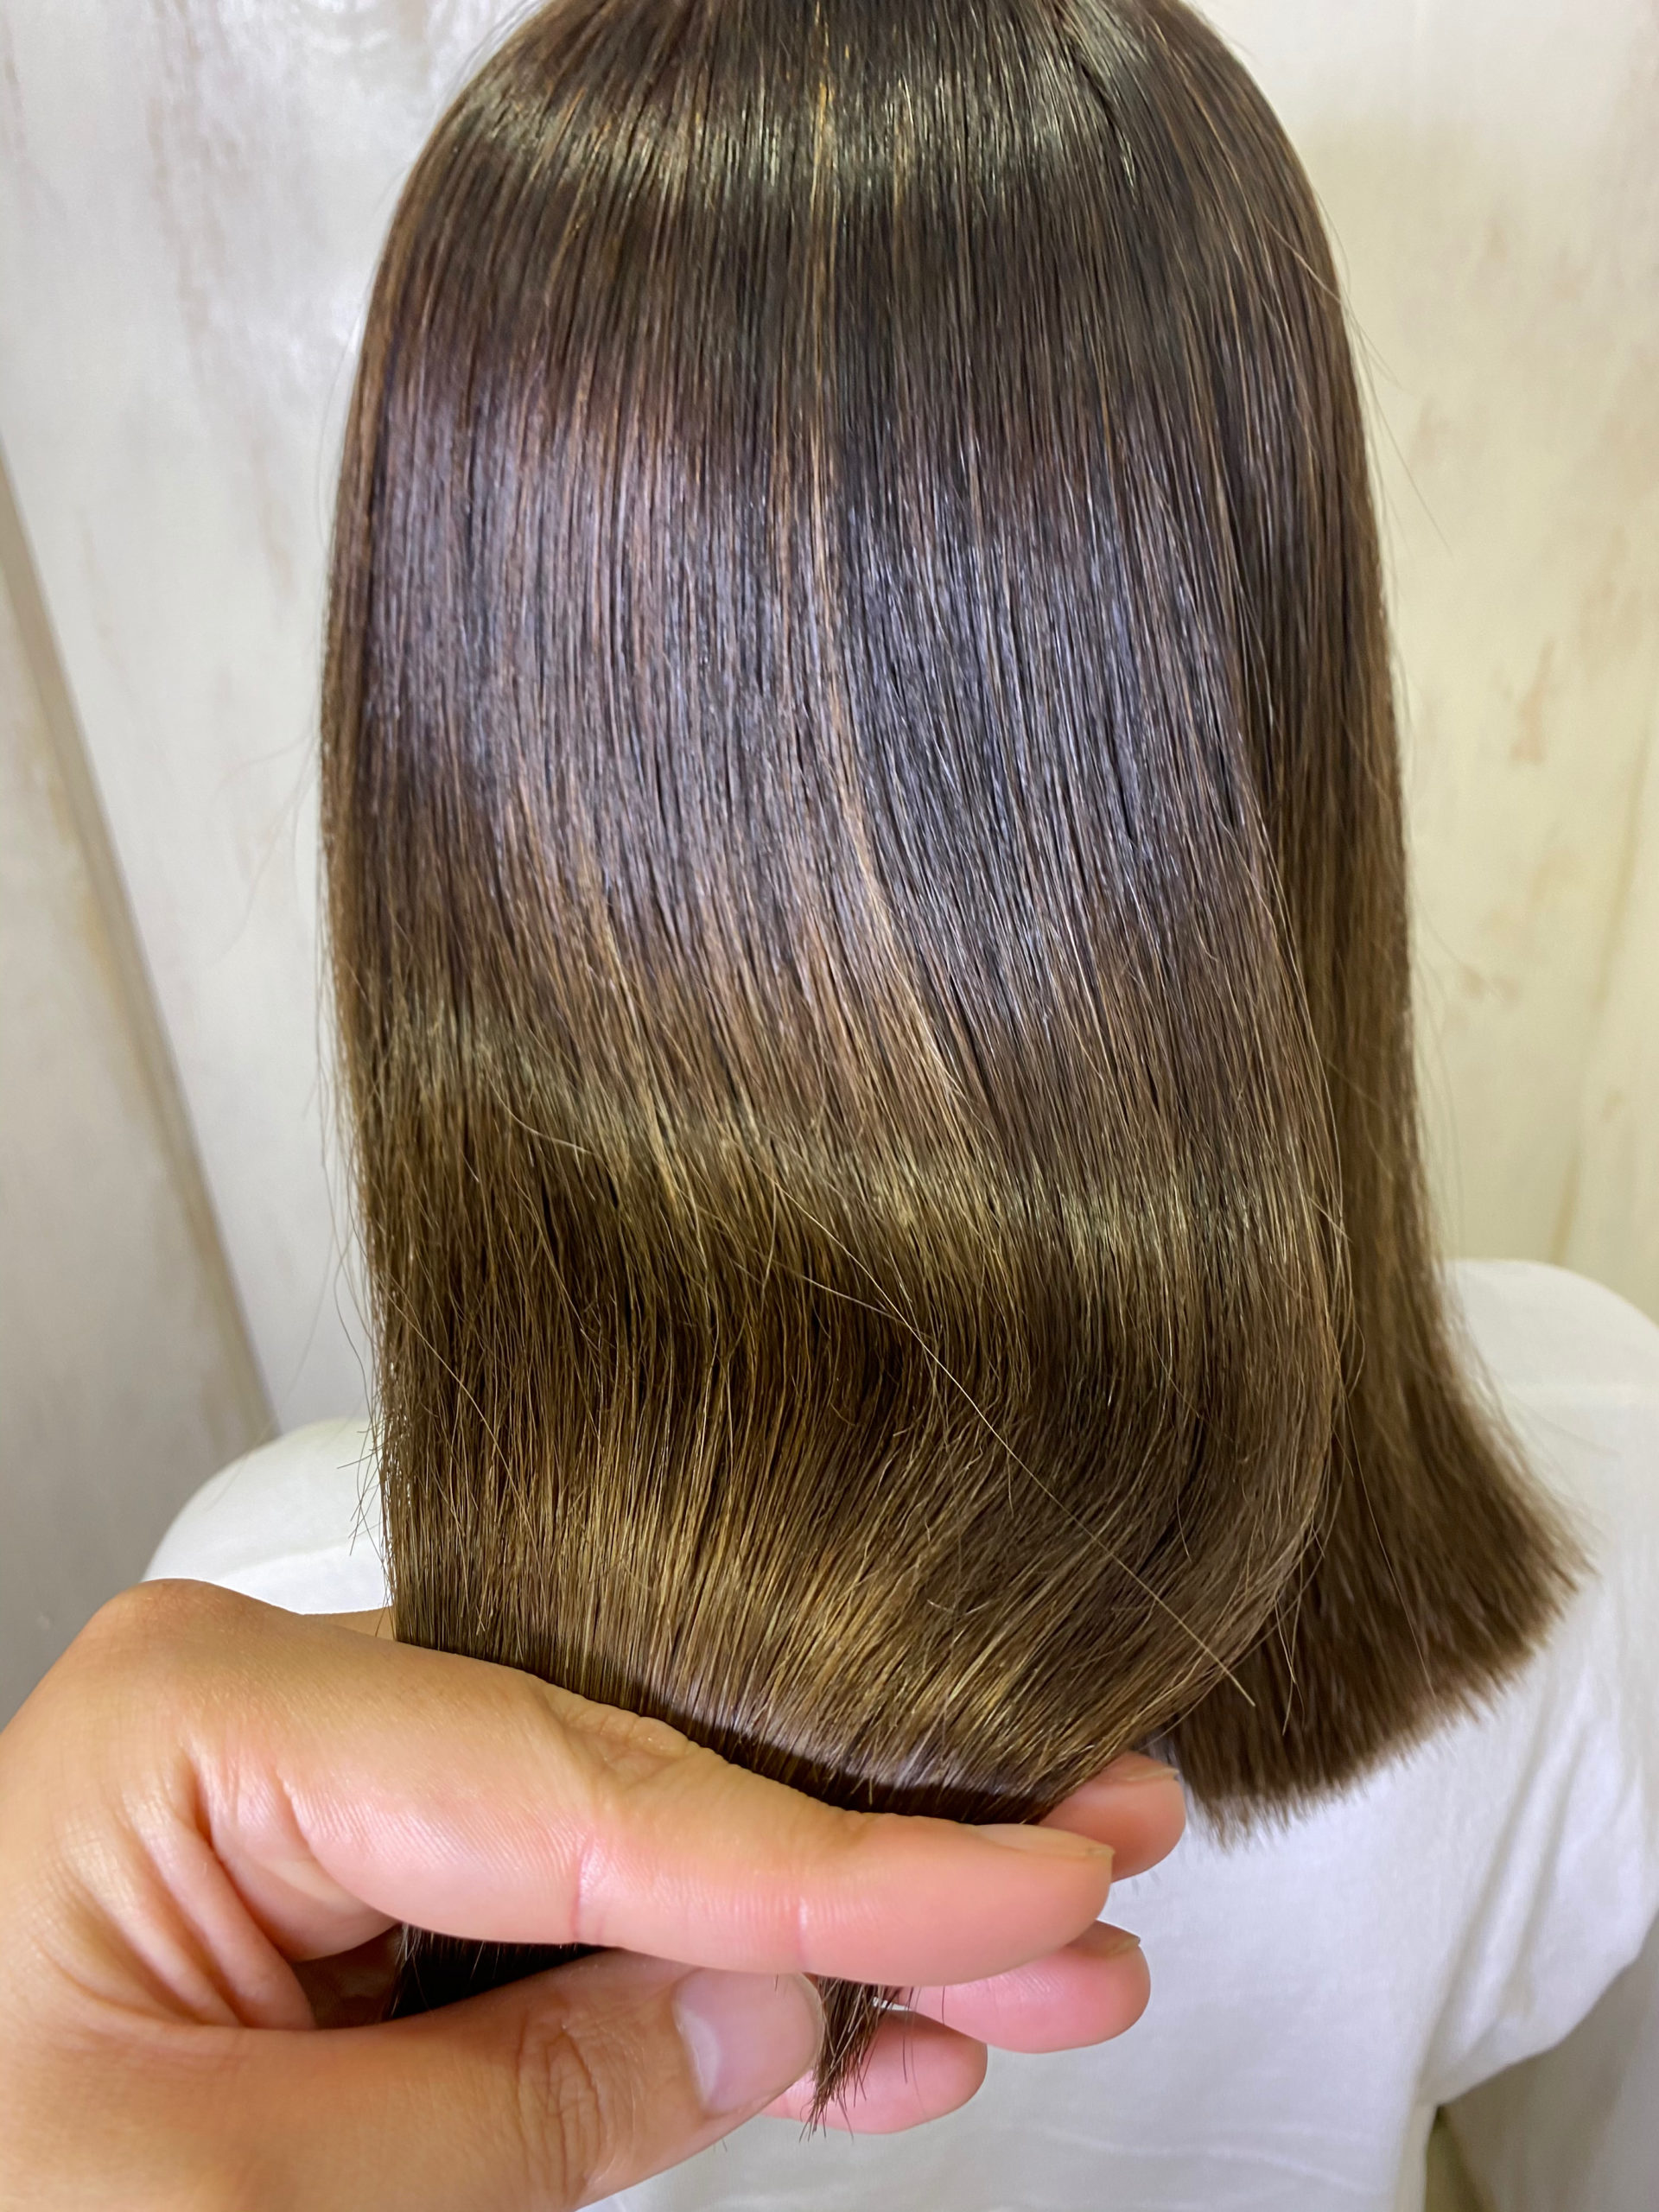 バレイヤージュカラー(ブリーチ)の方を縮毛矯正で艶髪ストレートヘア。原宿・表参道『髪のお悩みを解決するヘアケア美容師の挑戦』